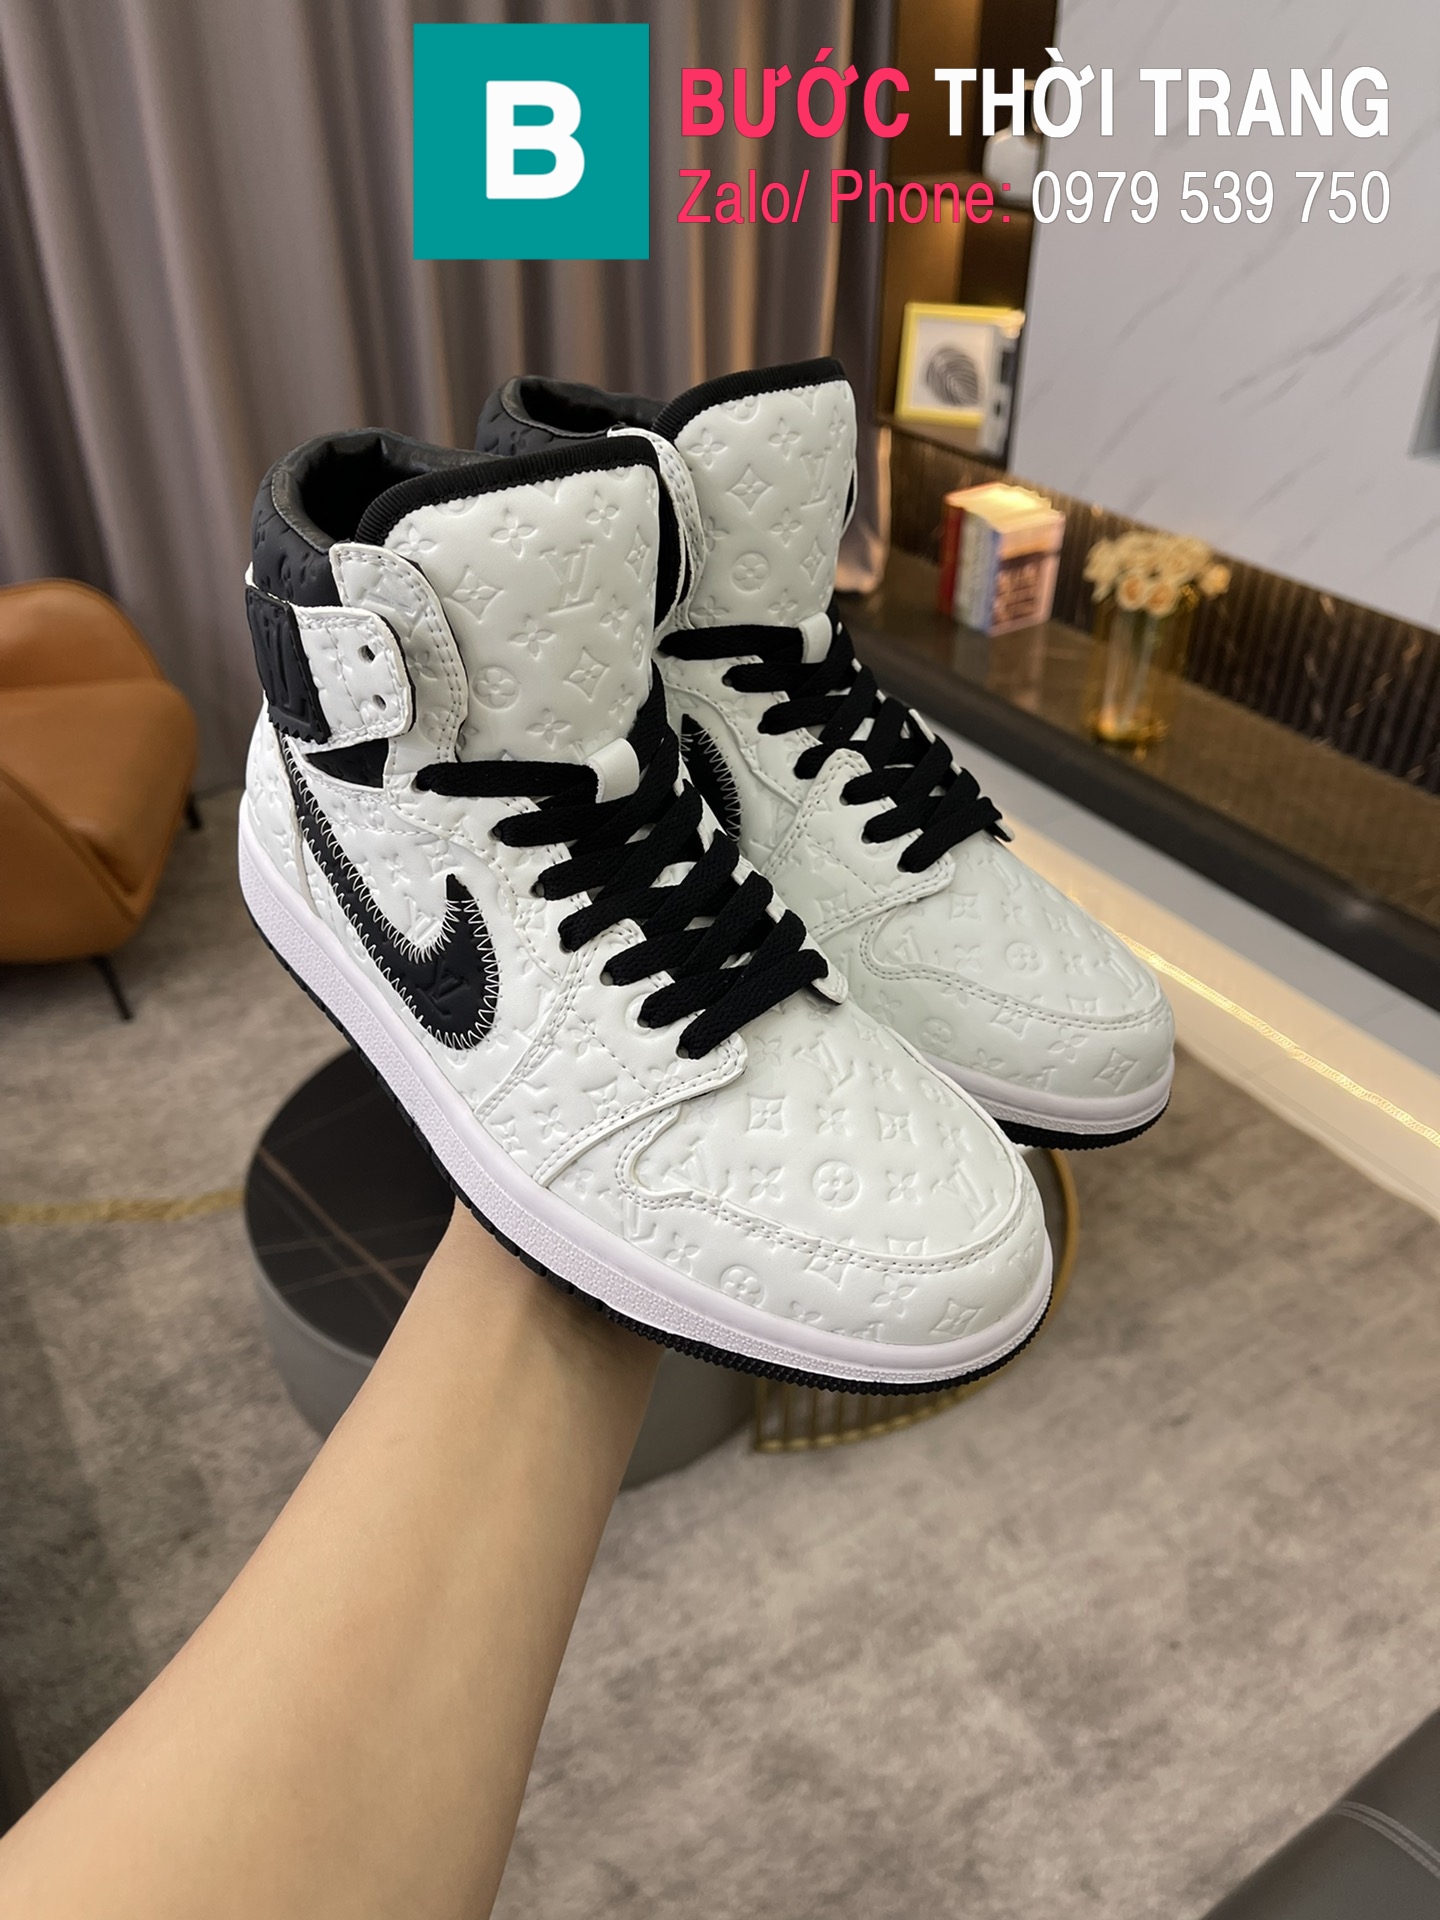 Giày Louis Vuitton x Nike Jordan cao cổ màu nâu  Túi Xách Nữ Túi Xách  Đẹp Túi Xách Giày Dép Nữ  Bước Thời Trang